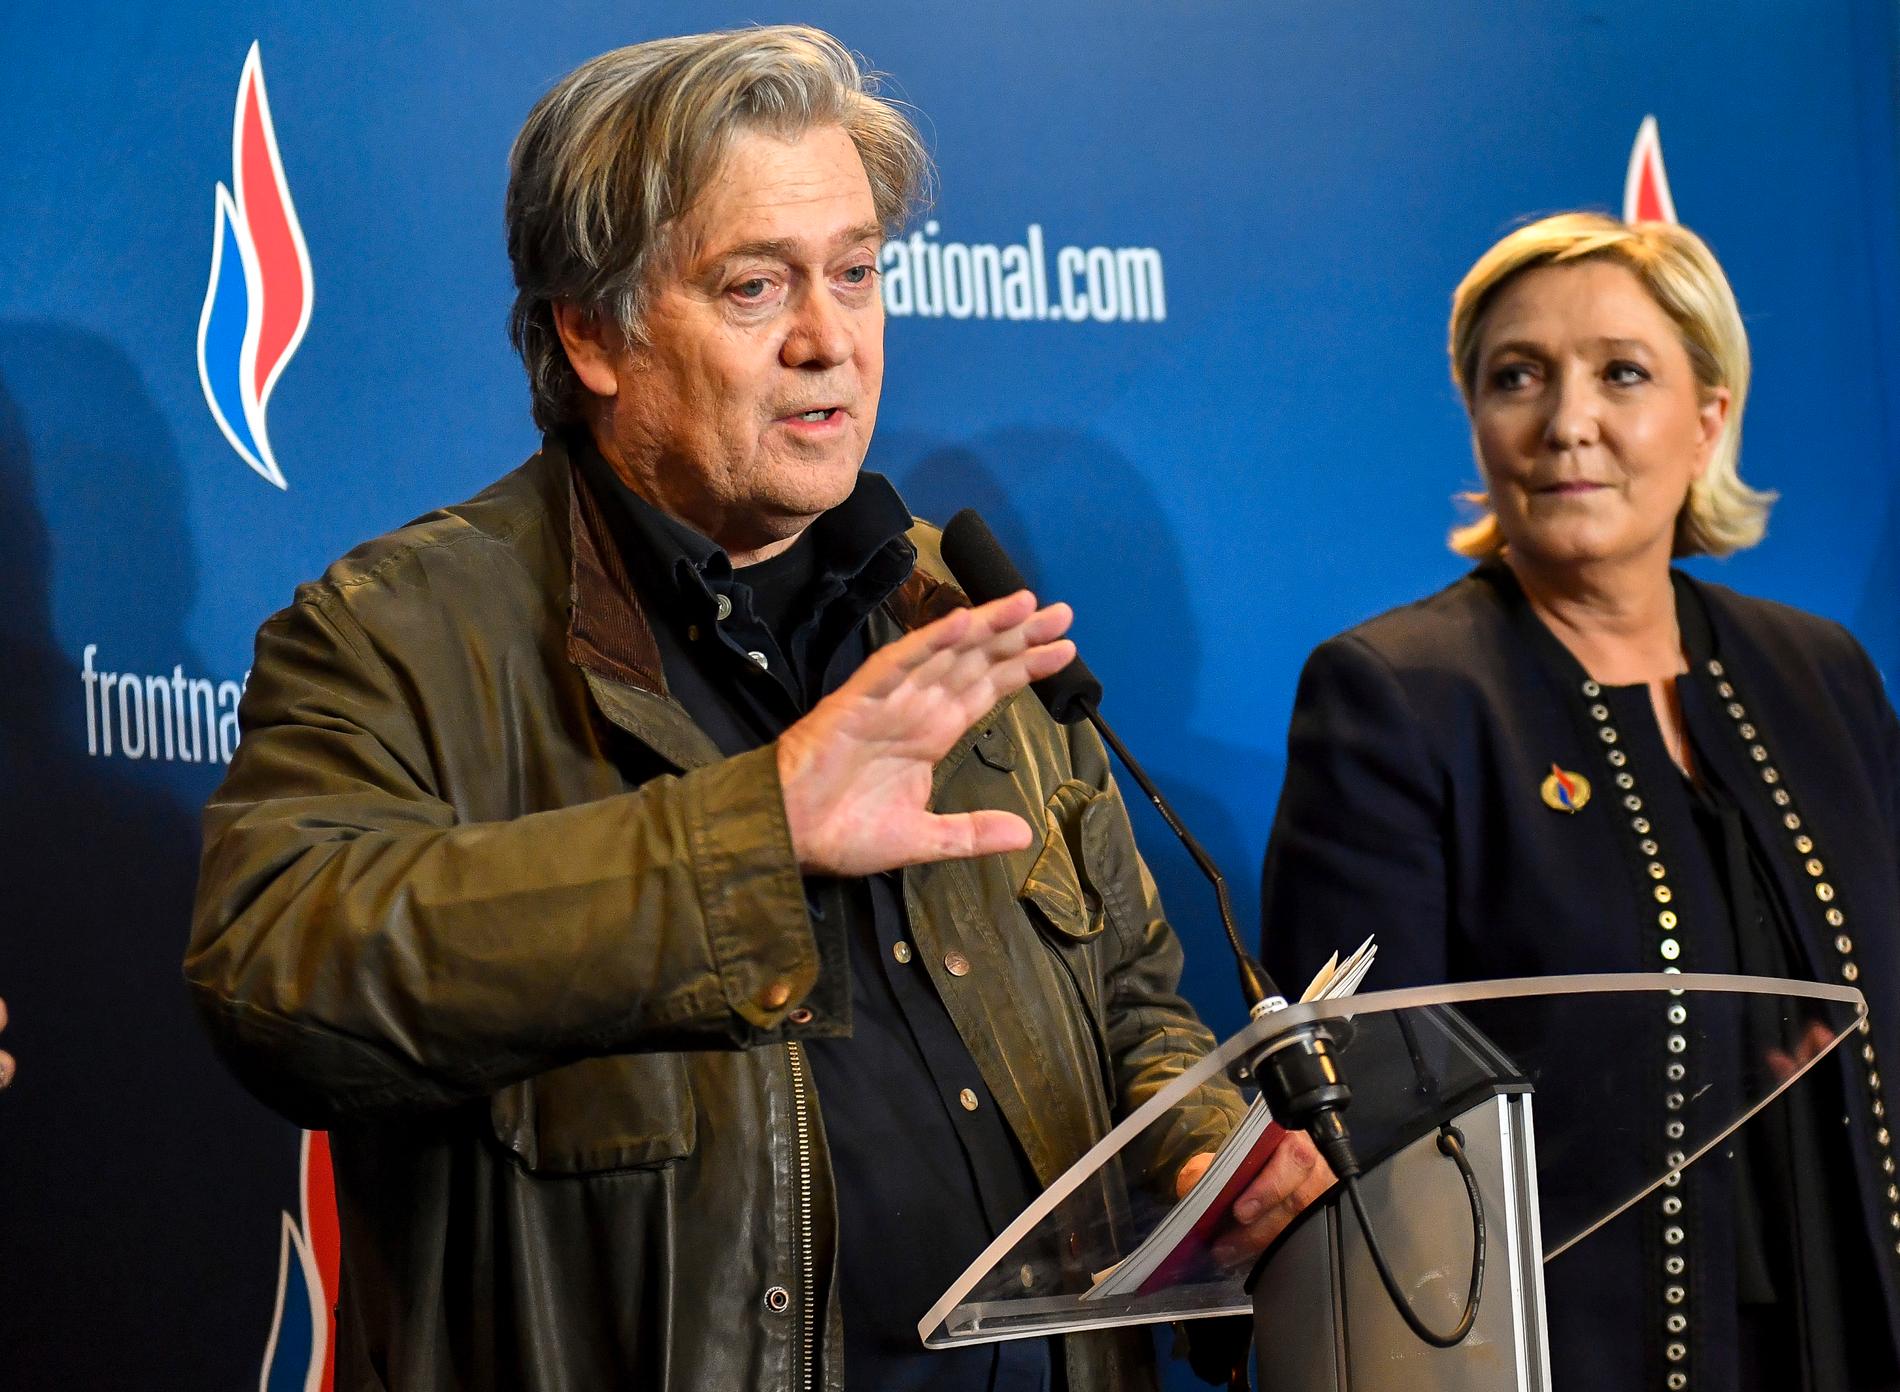 Steve Bannon och en av hans meningsfränder, Marine Le Pen, när de två framträdde tillsammans i våras.